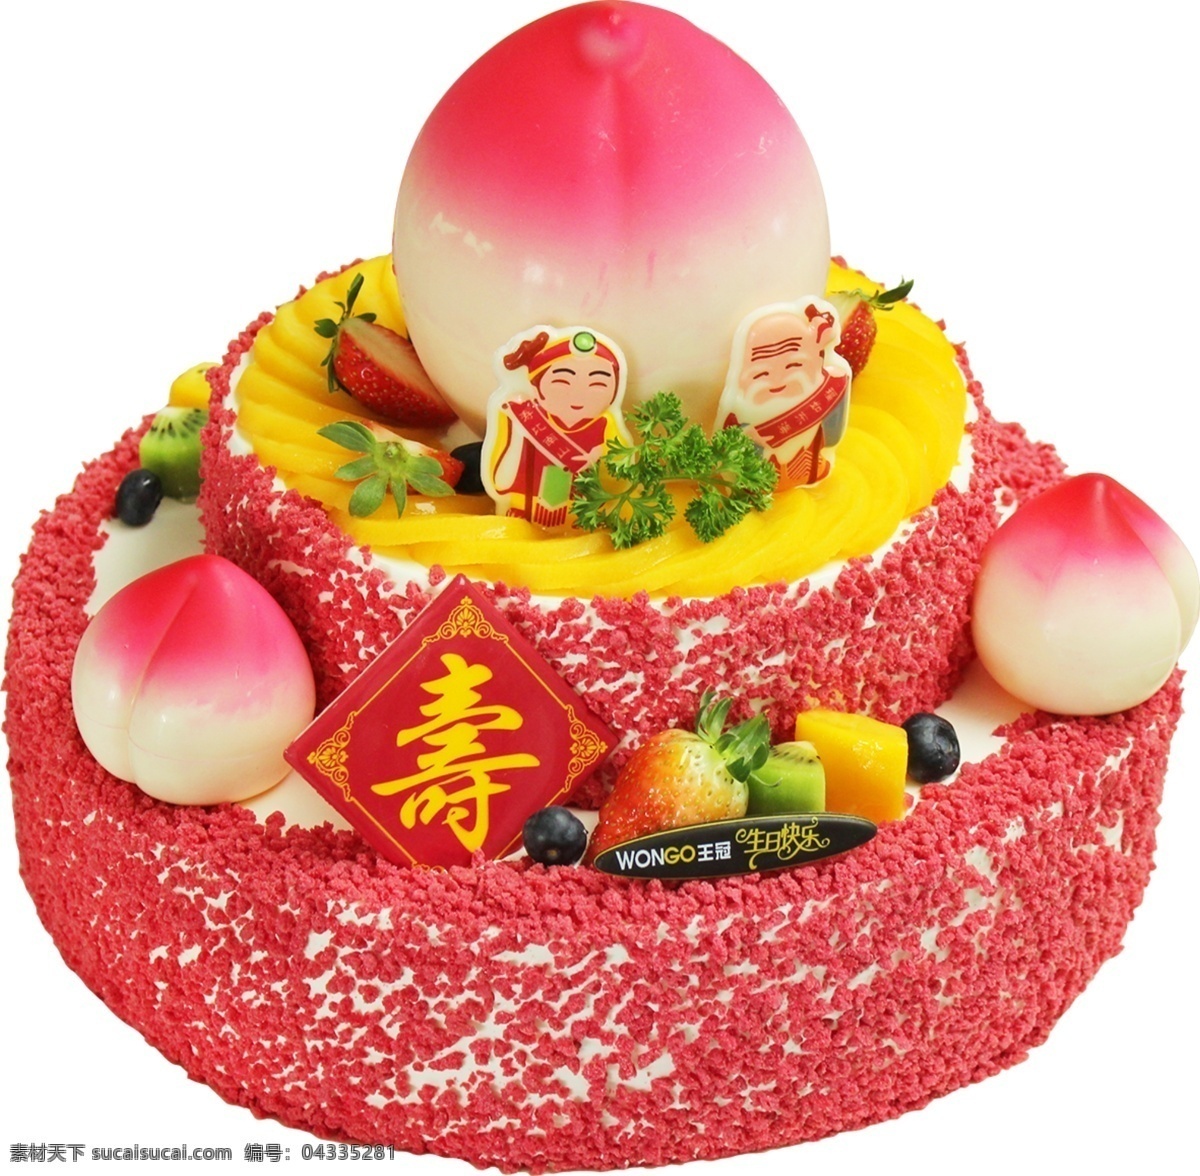 寿蛋糕 寿 蛋糕 水果 水果蛋糕 奶油蛋糕 奶油 寿桃 桃子 图 菜单菜谱